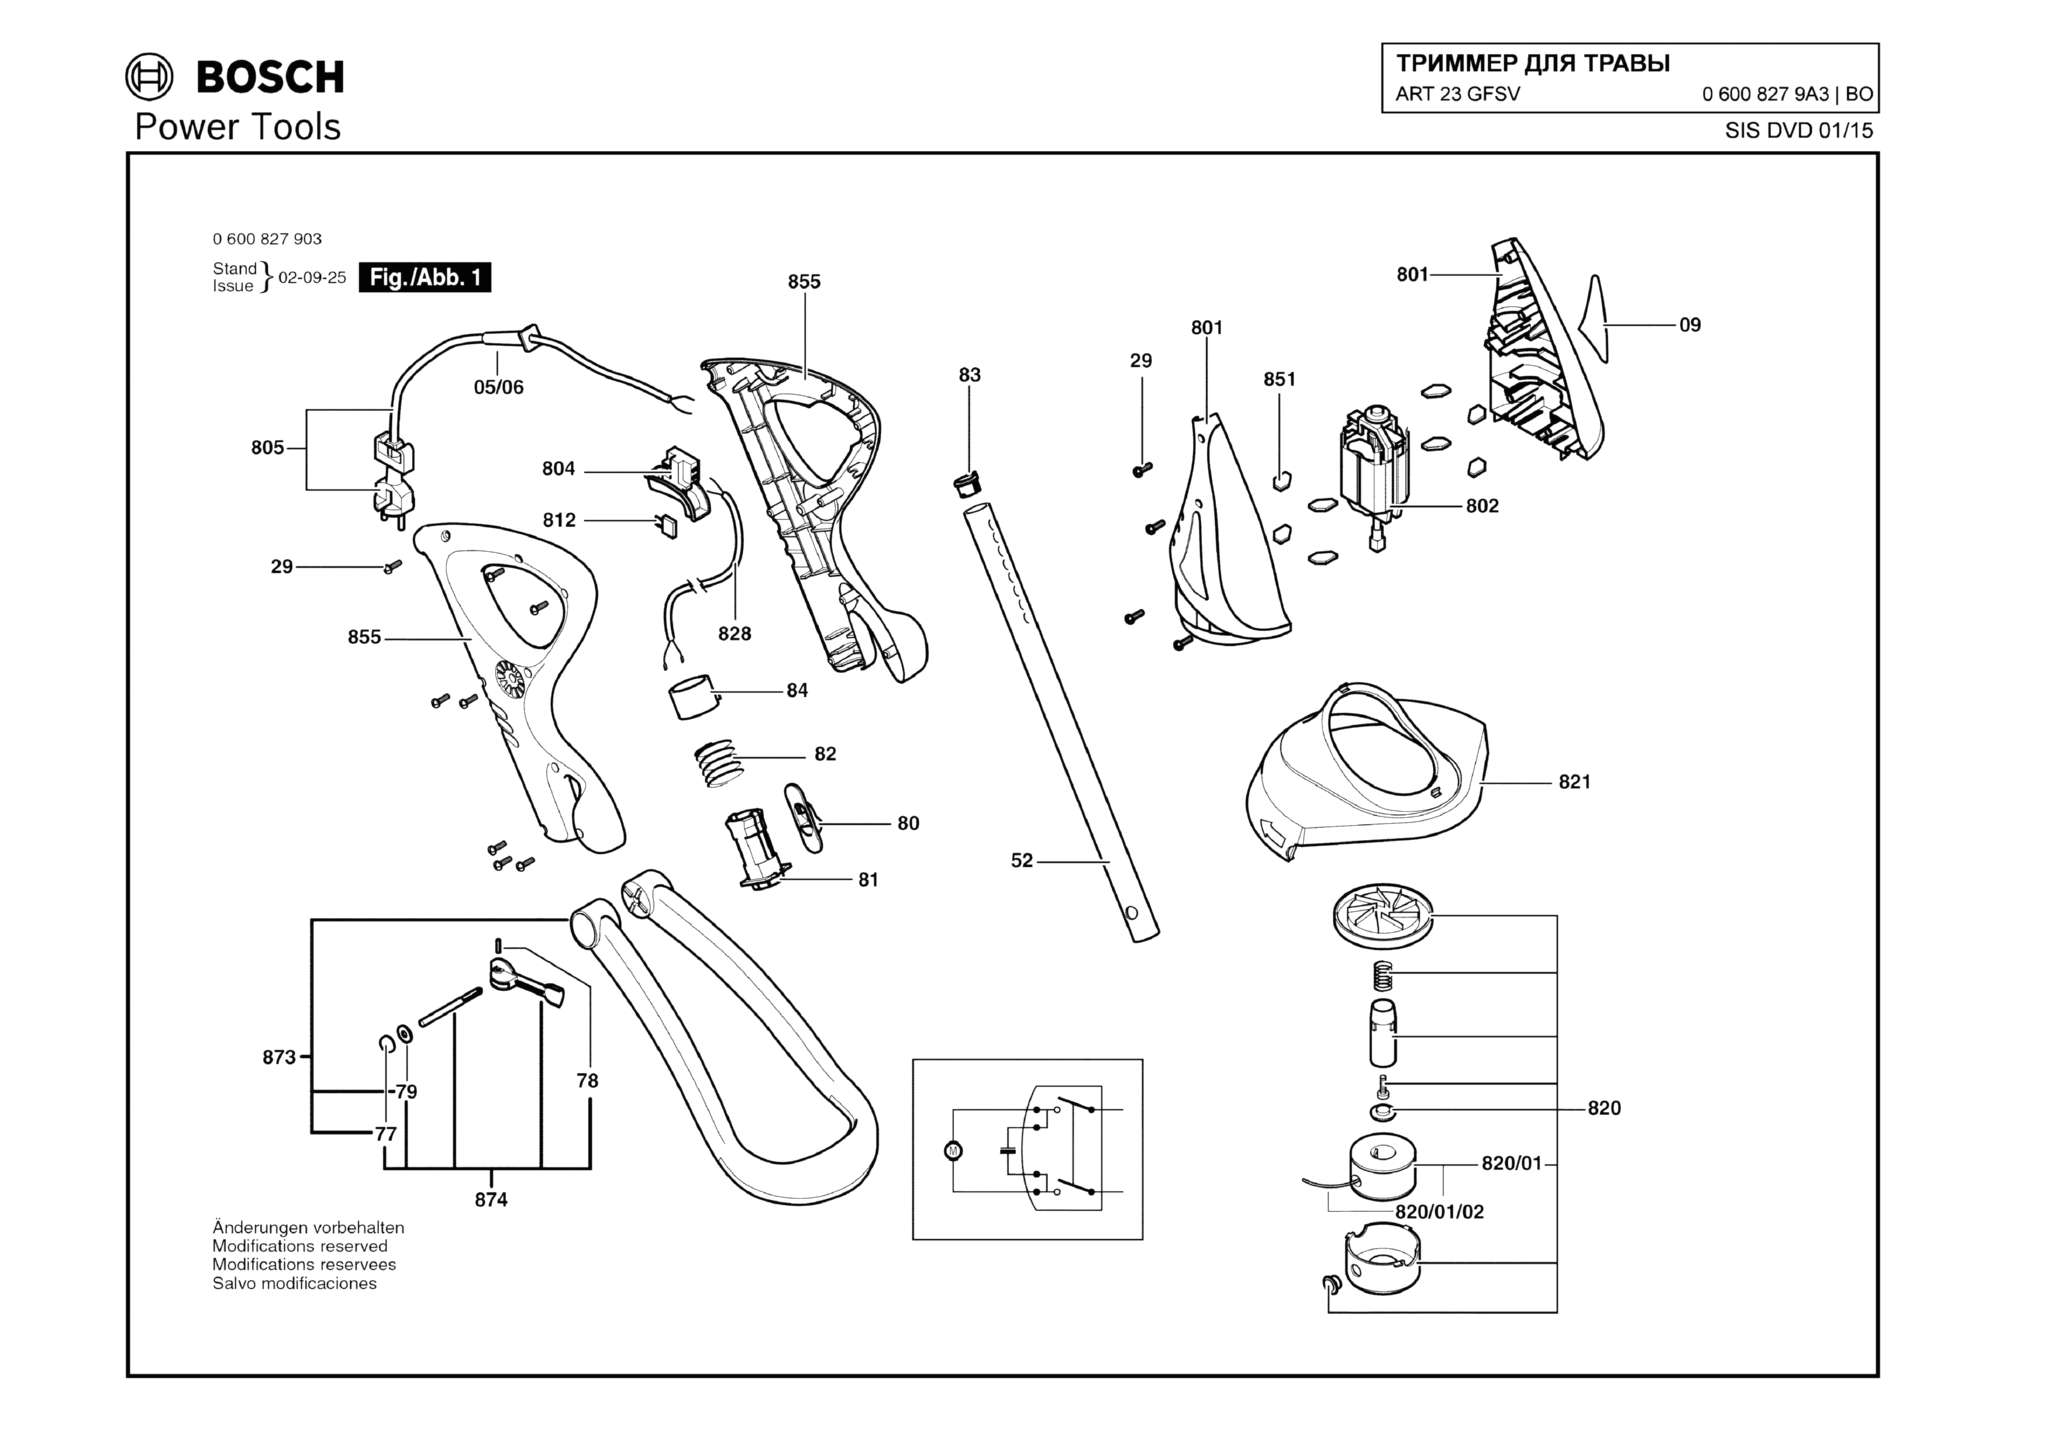 Запчасти, схема и деталировка Bosch ART 23 GFSV (ТИП 06008279A3)